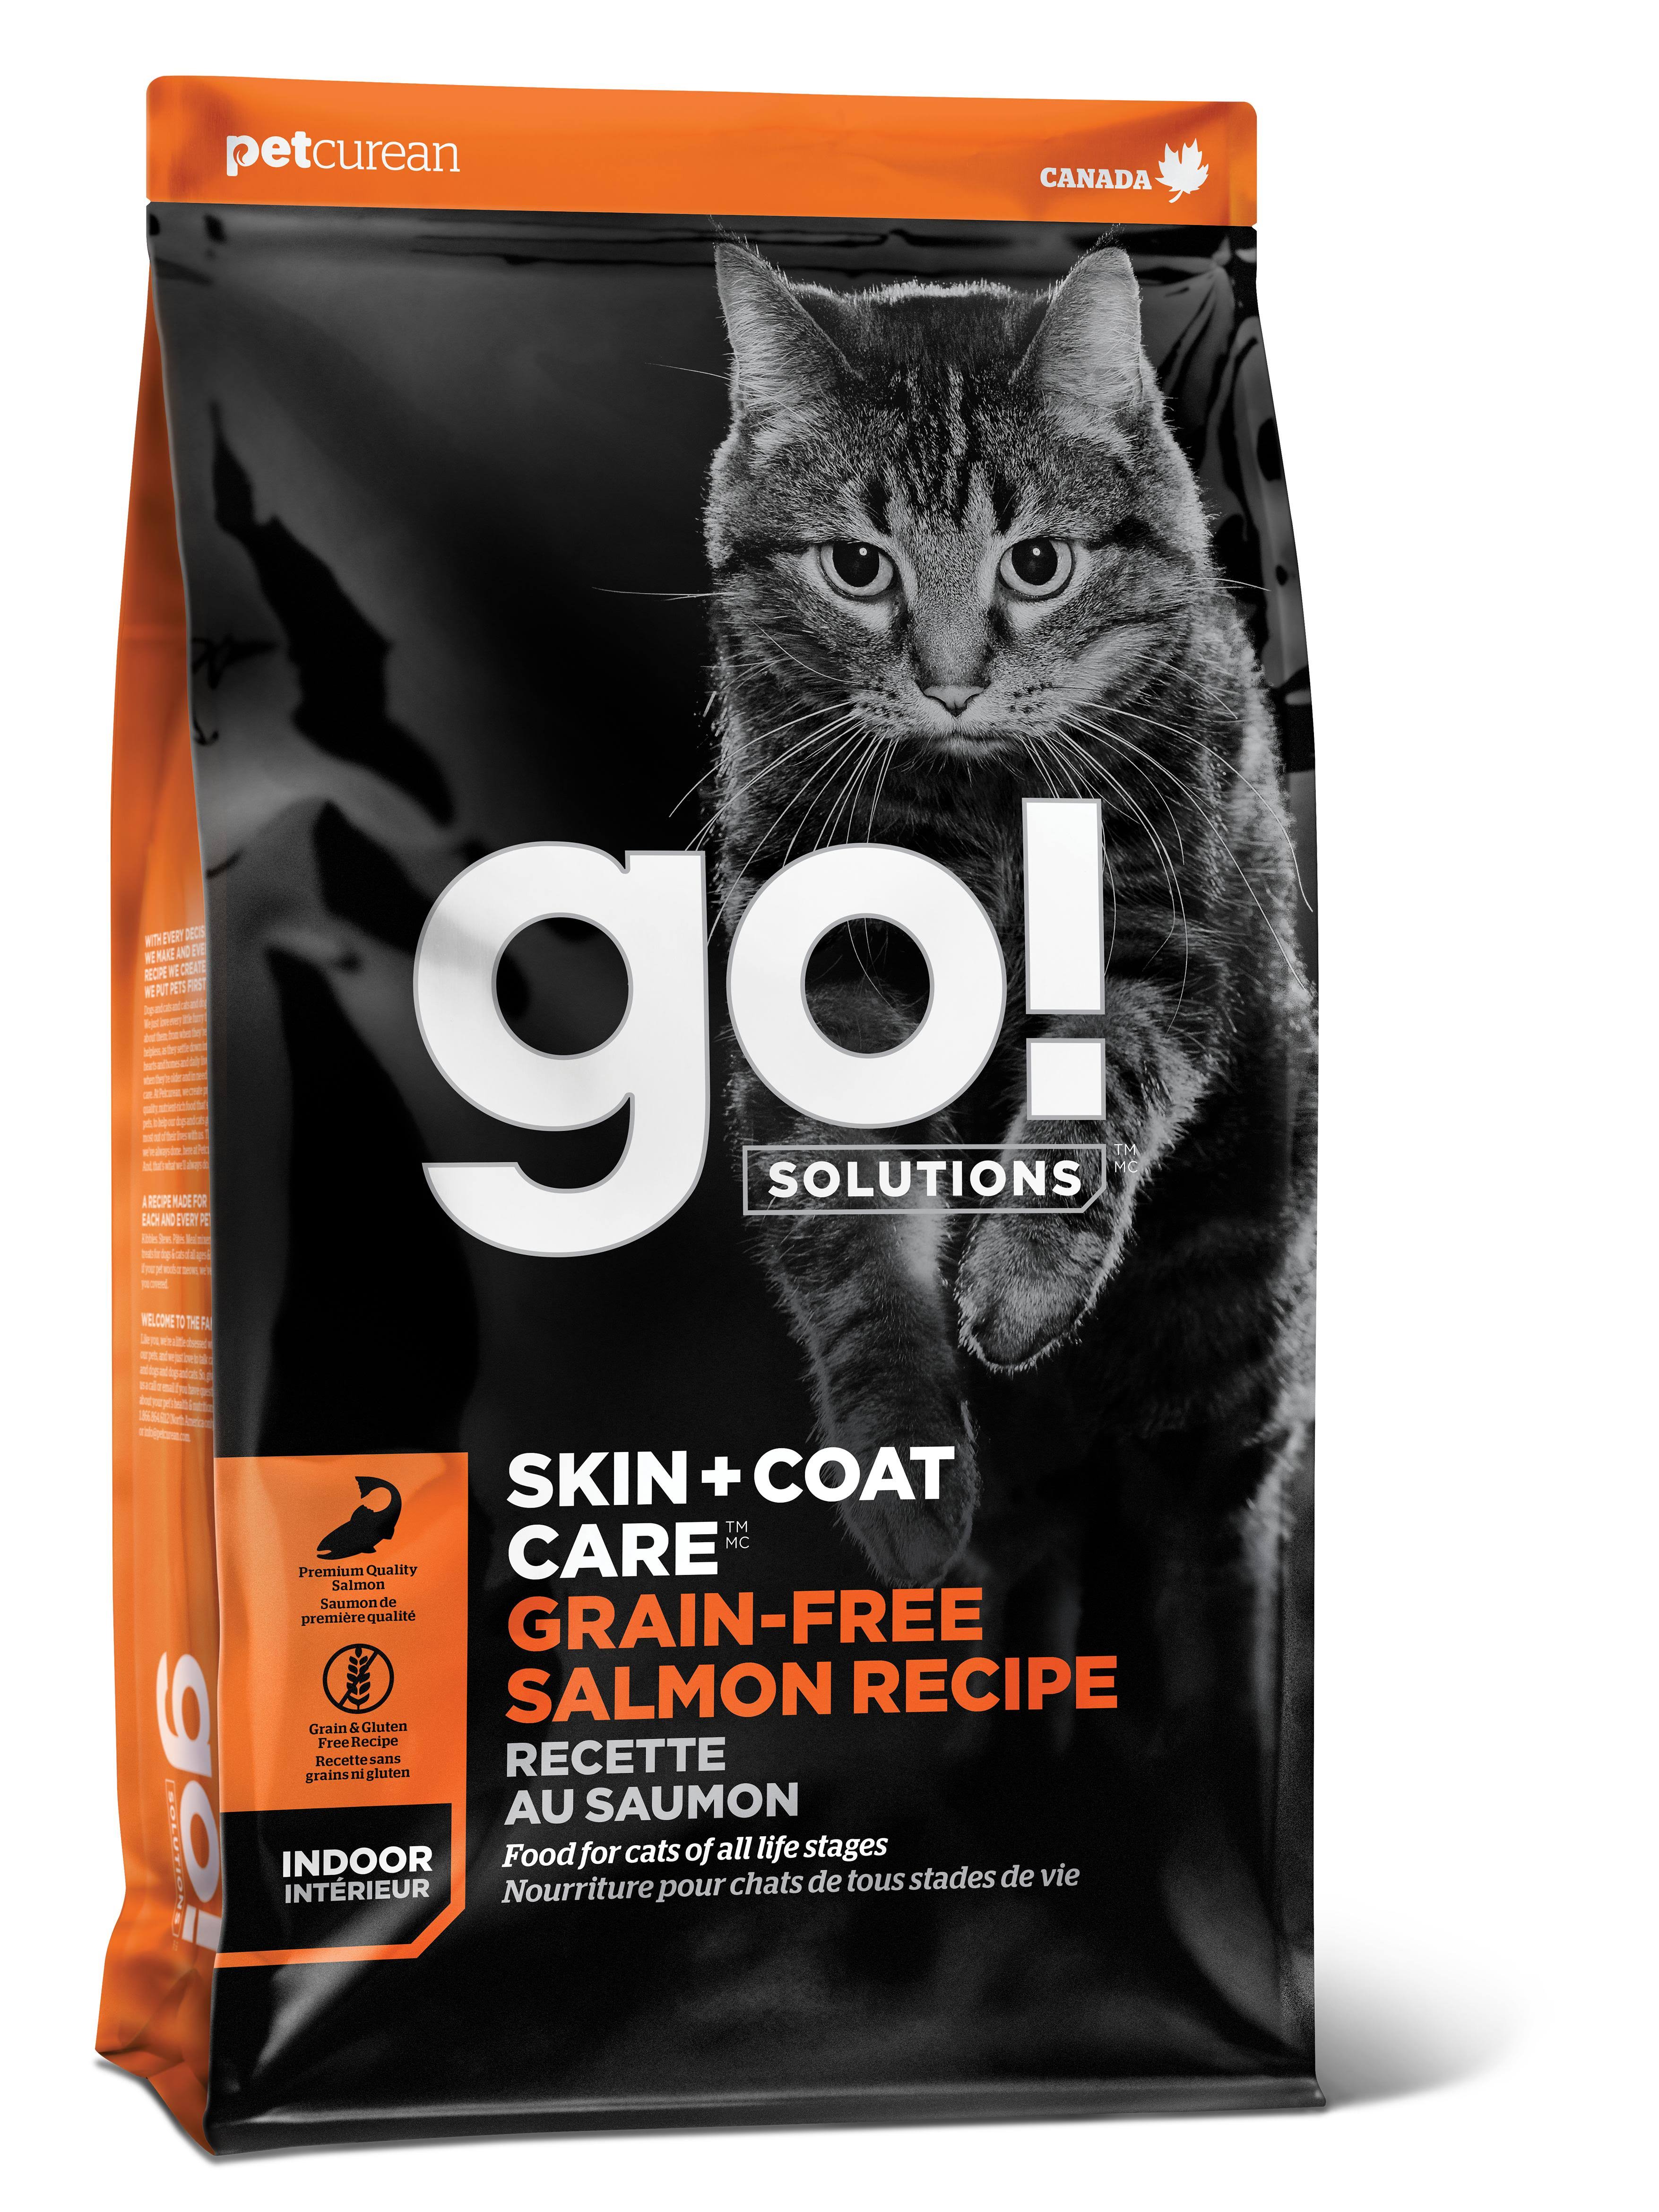 Go! Solutions Skin + Coat Care Grain Free Salmon Cat Food [16lb]